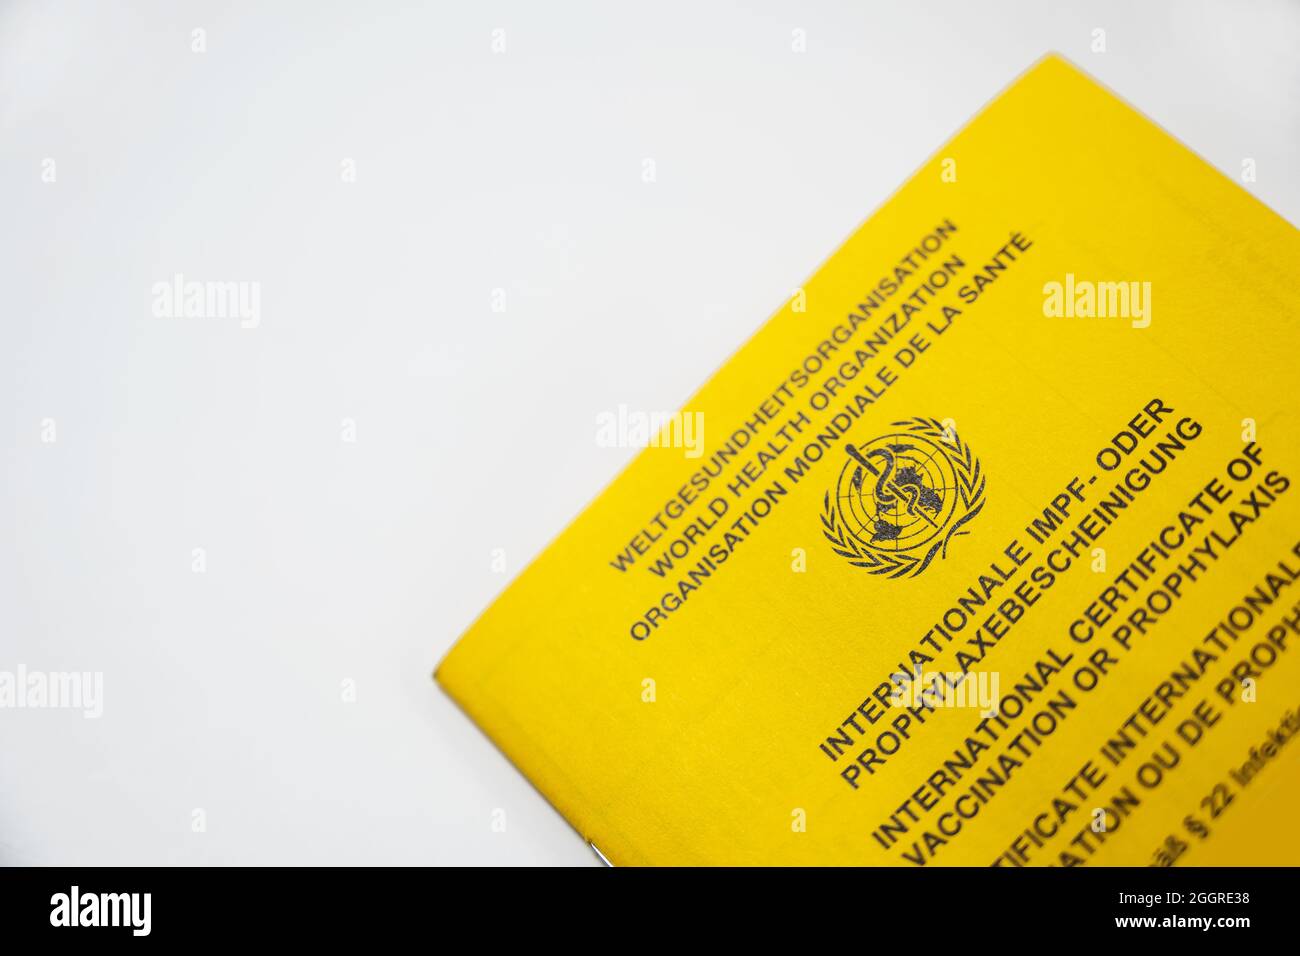 Parte del libro amarillo del Certificado Internacional de Vacunación de LA OMS, Organización Mundial de la Salud con fondo gris claro y espacio de copia, seleccionado Foto de stock